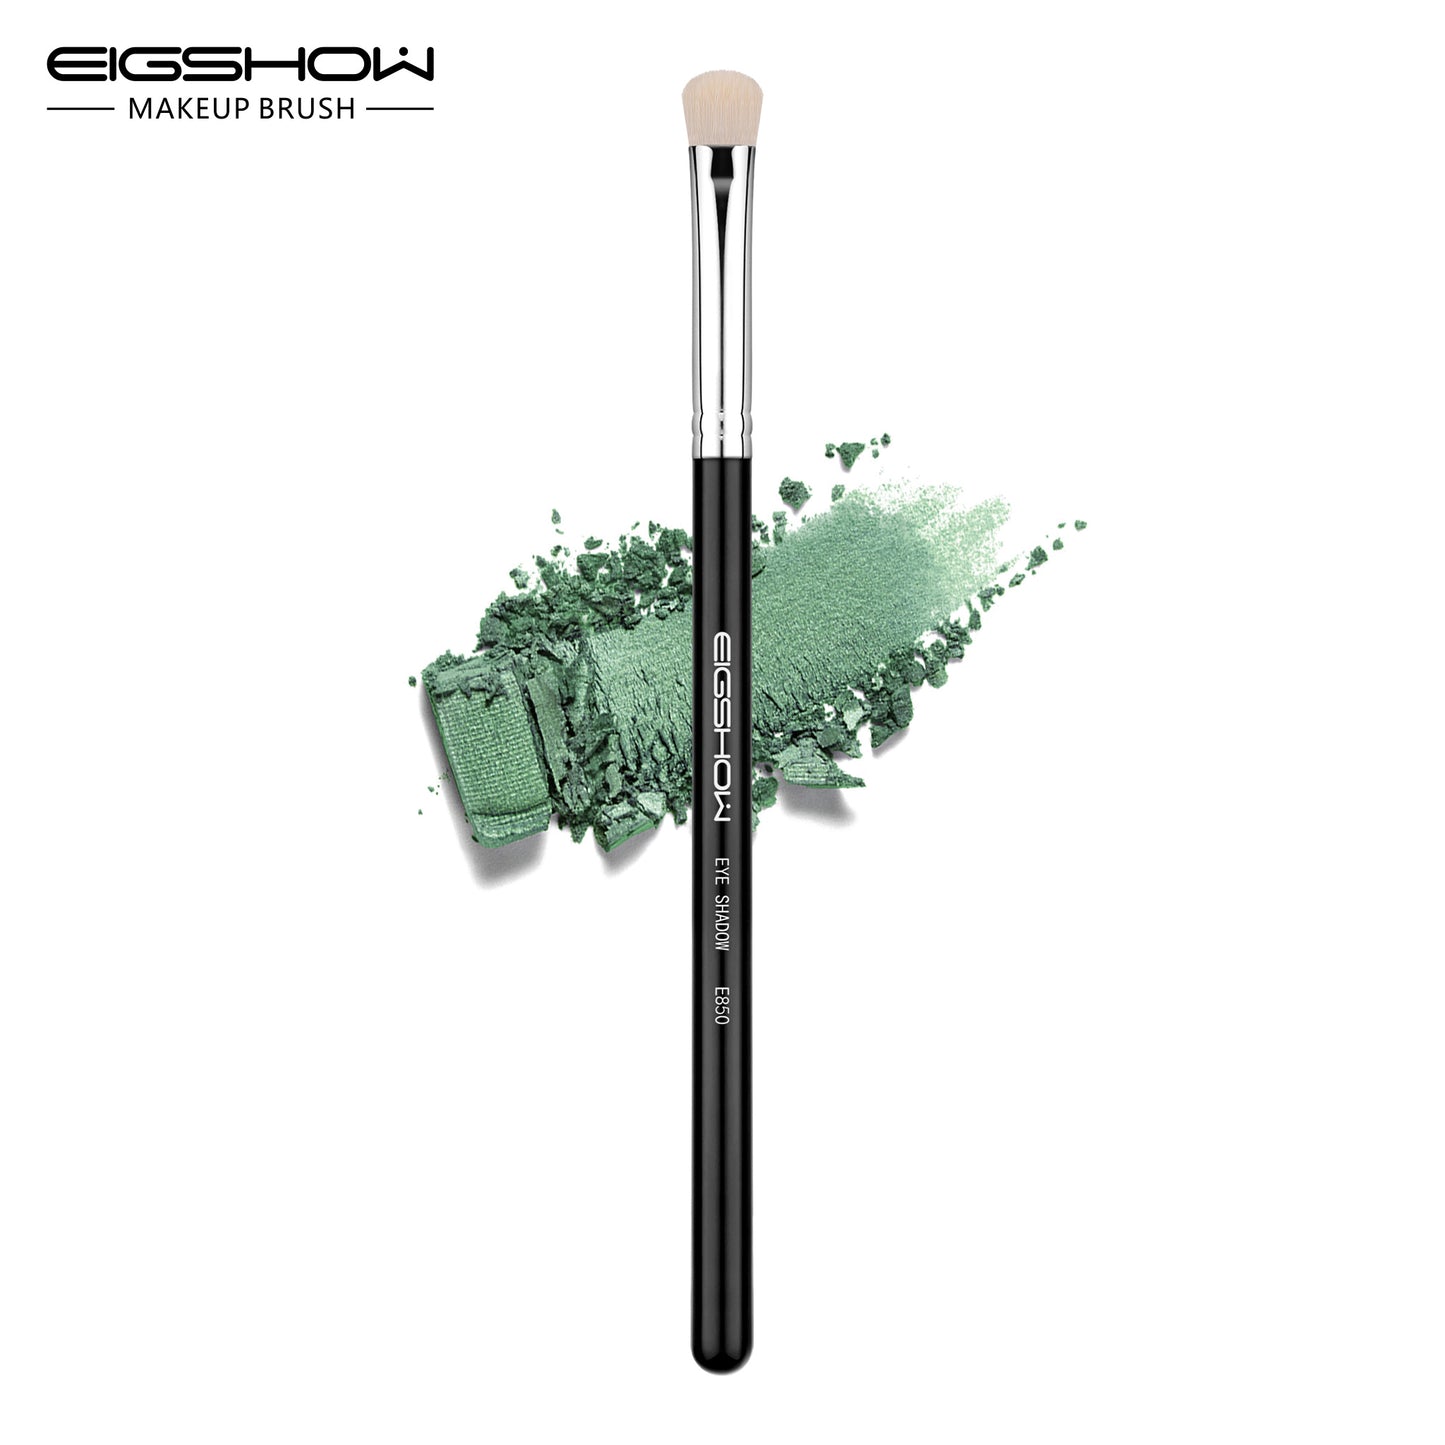 E850 Brush for applying eyeshadows